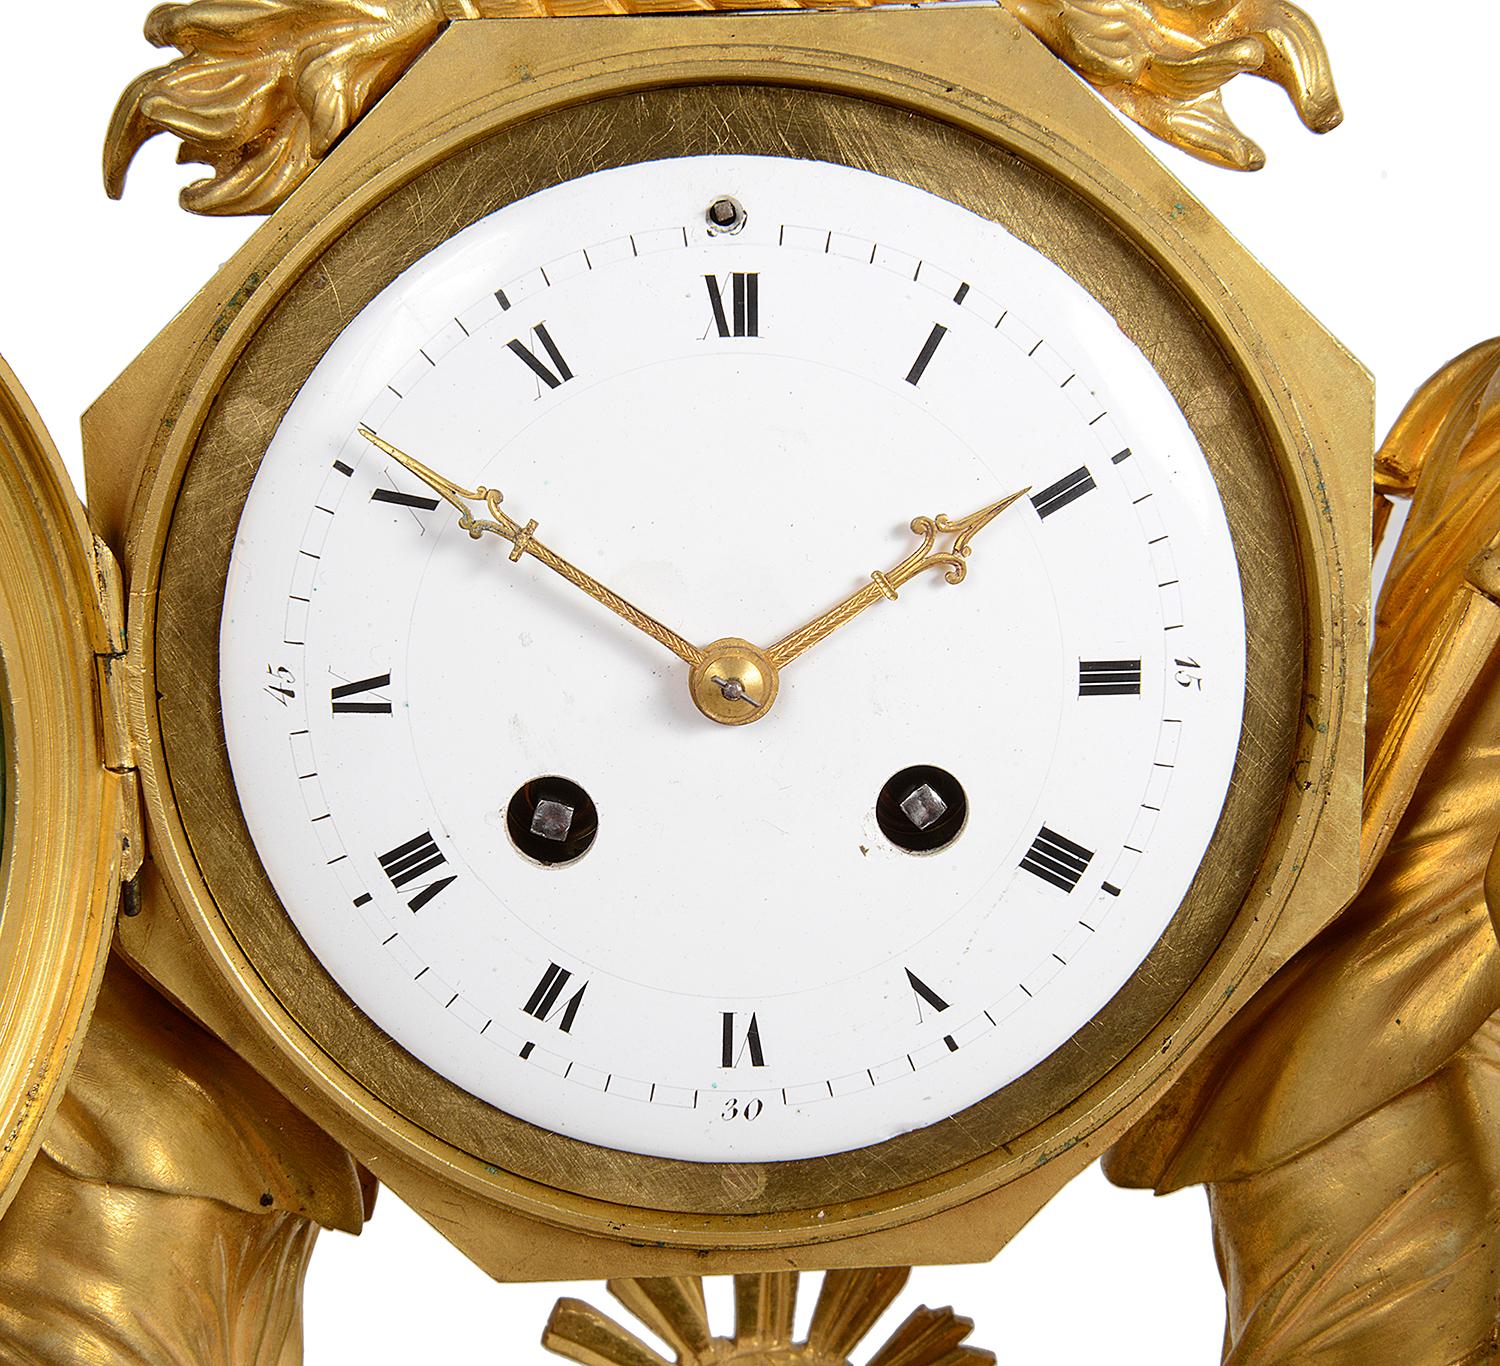 Très impressionnante et élégante horloge de manteau du début du XIXe siècle en bronze doré et marbre vert, avec deux jeunes filles classiques alimentant des béliers de part et d'autre, un aigle au-dessus de l'horloge circulaire en émail blanc, un